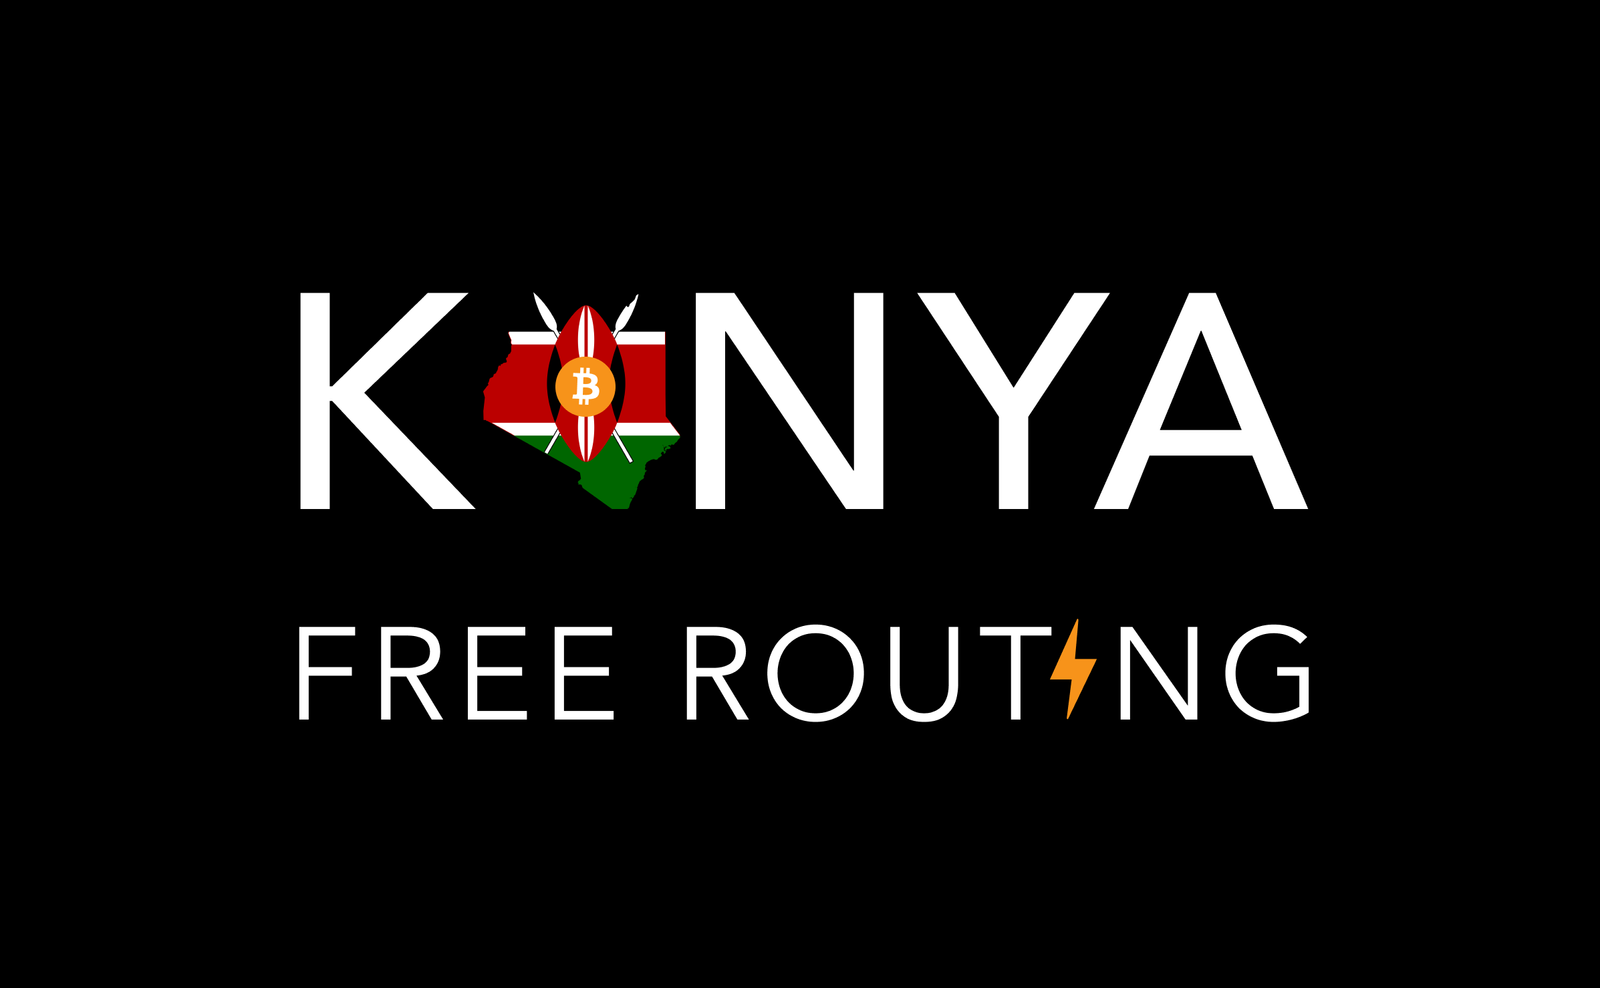 Kenya Free Routing logo